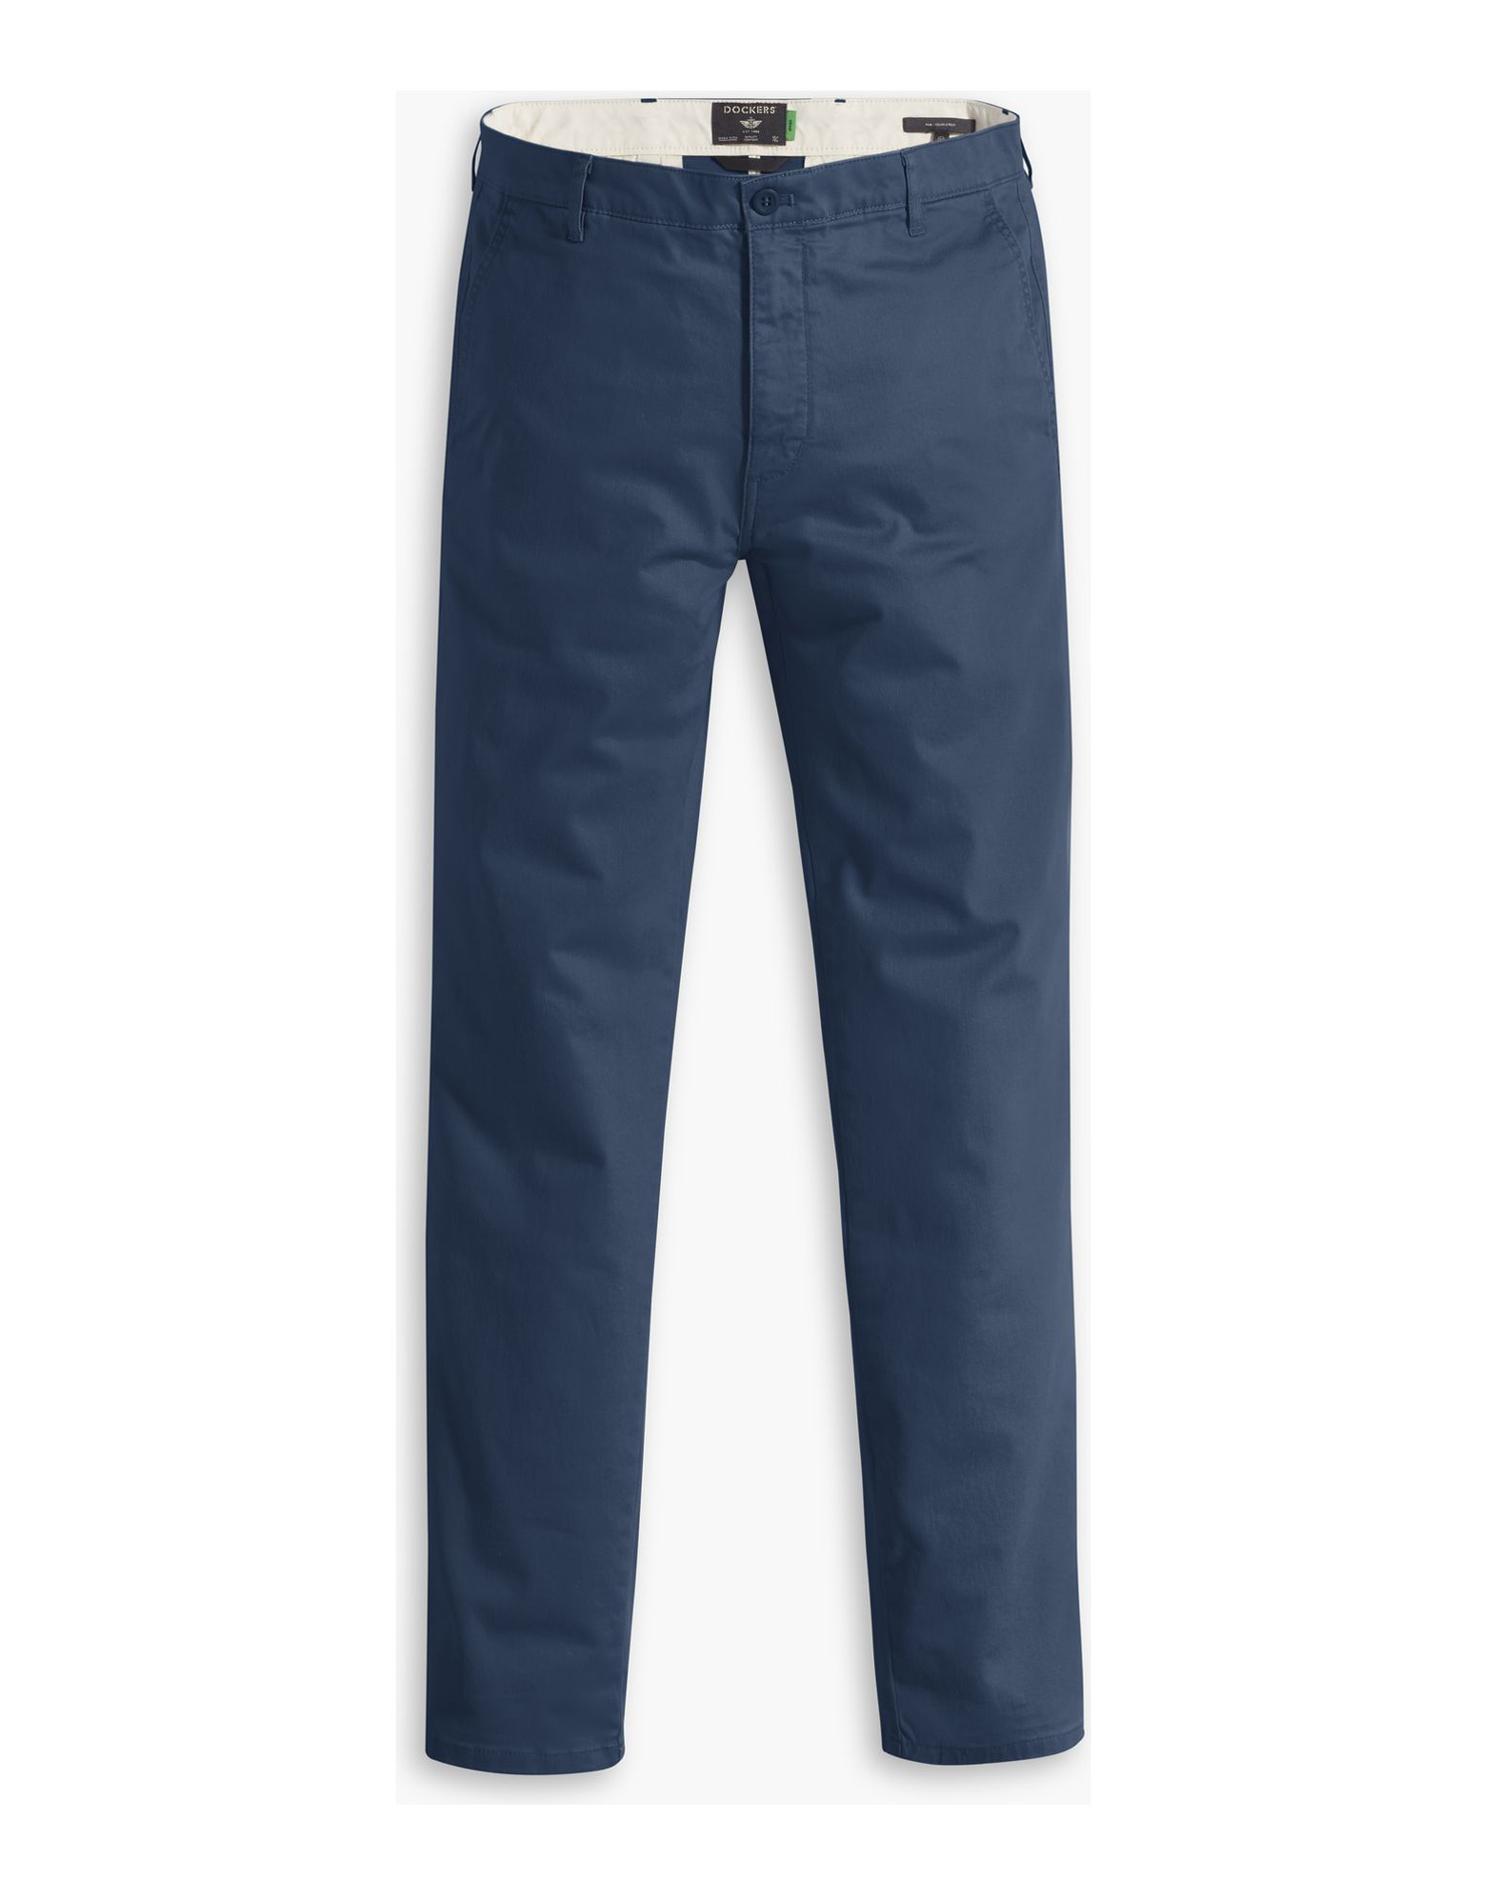 Dockers pantalones de hombre slim fit chino de algodón y cáñamo A1164-0028 azul